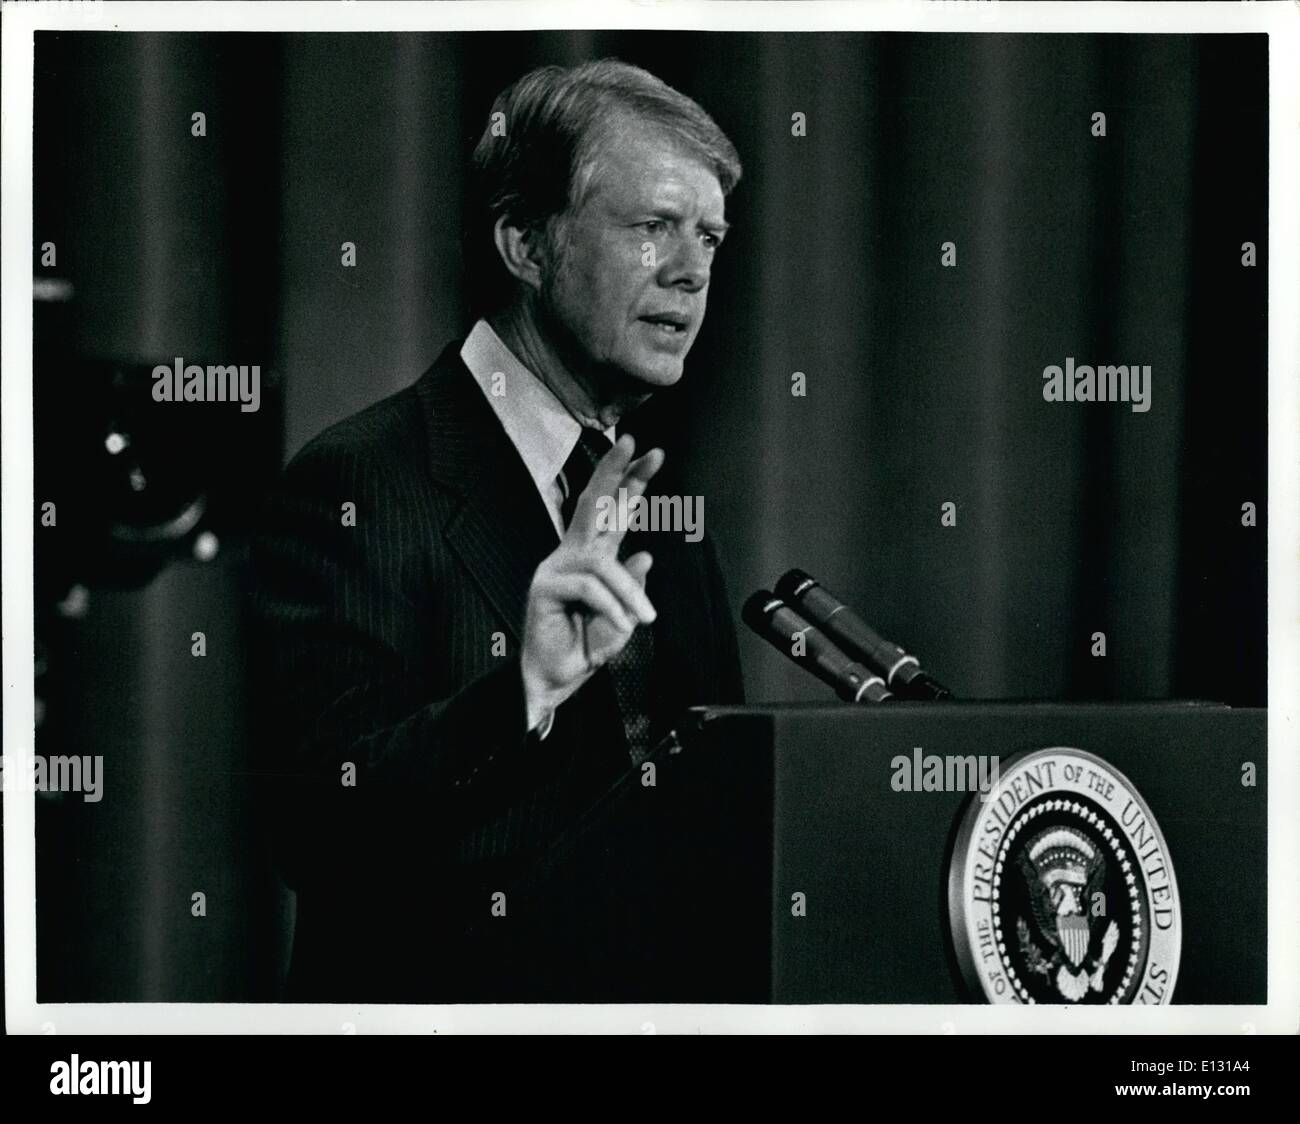 Le 26 février 2012 - Le Président Jimmy Carter à l'adresse sur l'inflation l'American Society of Newspaper Editors, Washington Hilton, Washington D.C. Banque D'Images